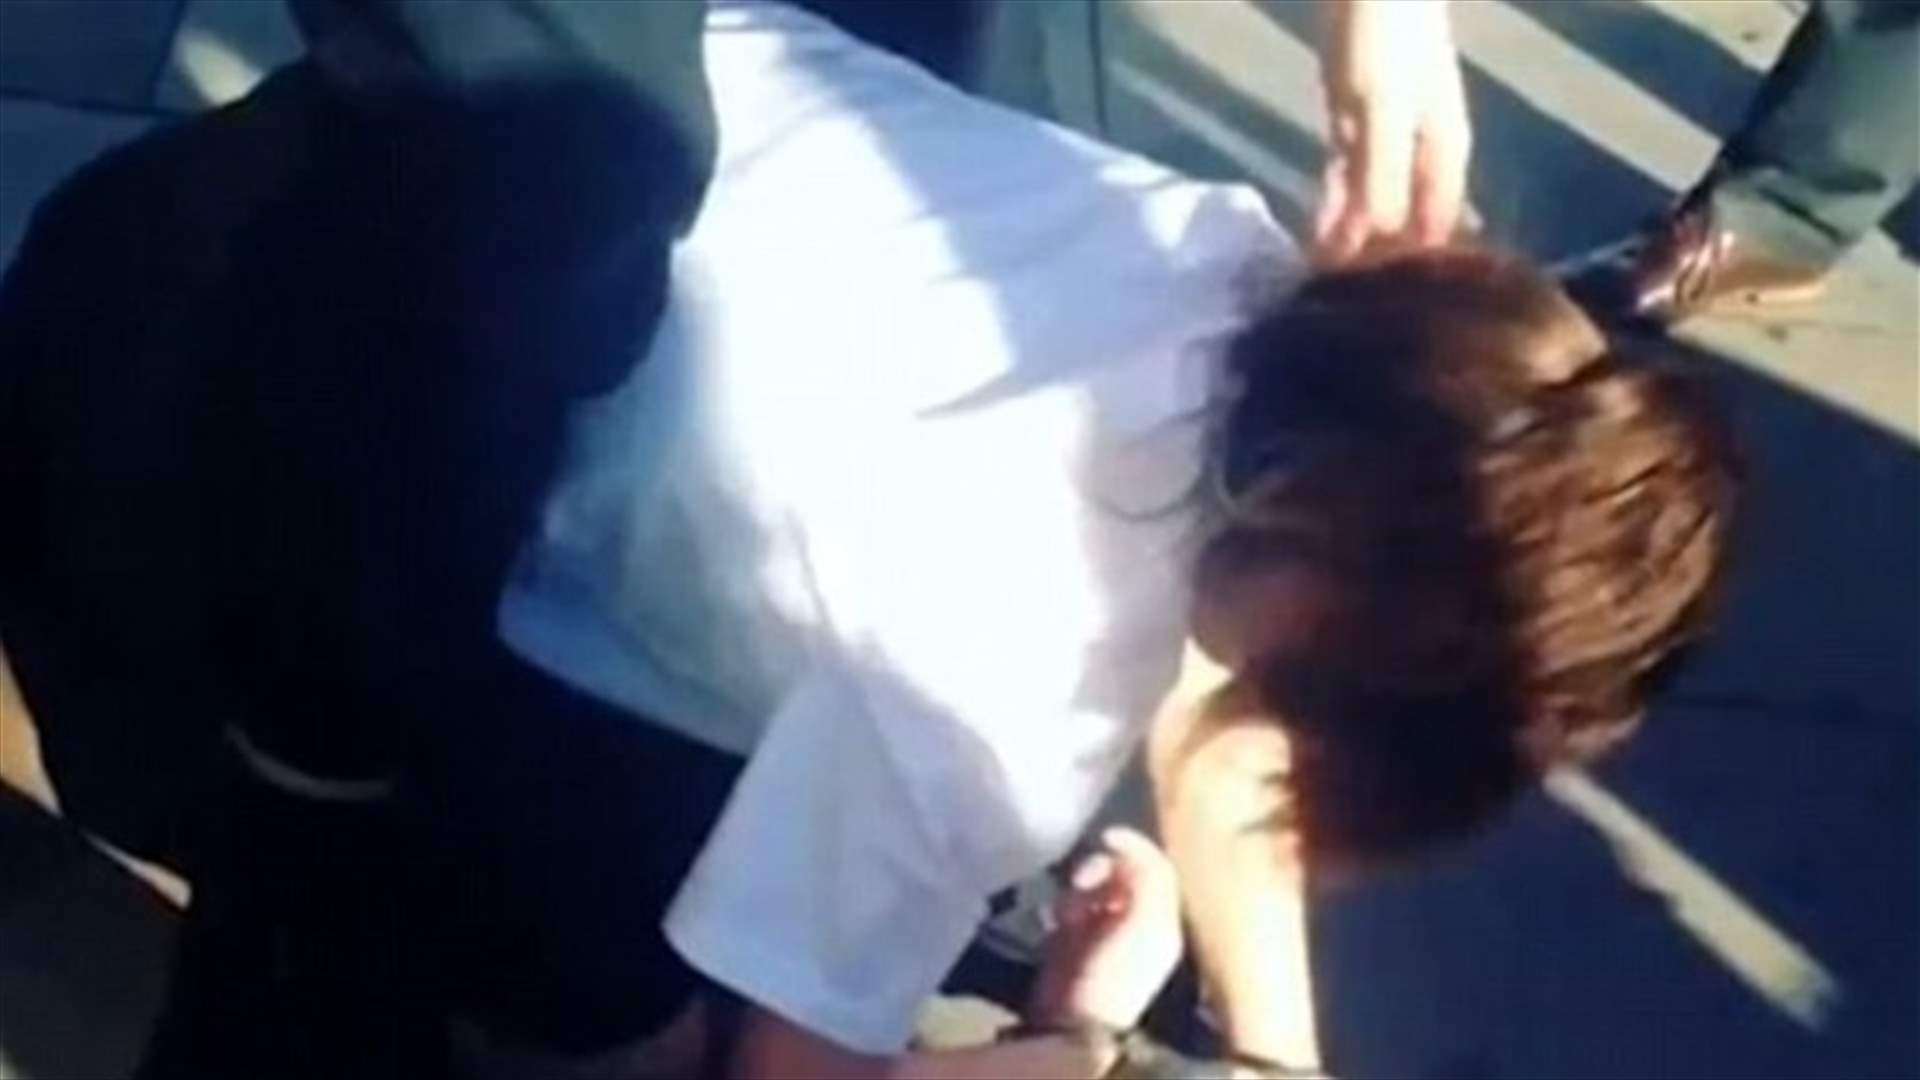 بالفيديو: قاصر تتعرّض للعنف من قبل الشرطة... فما هو السبب؟